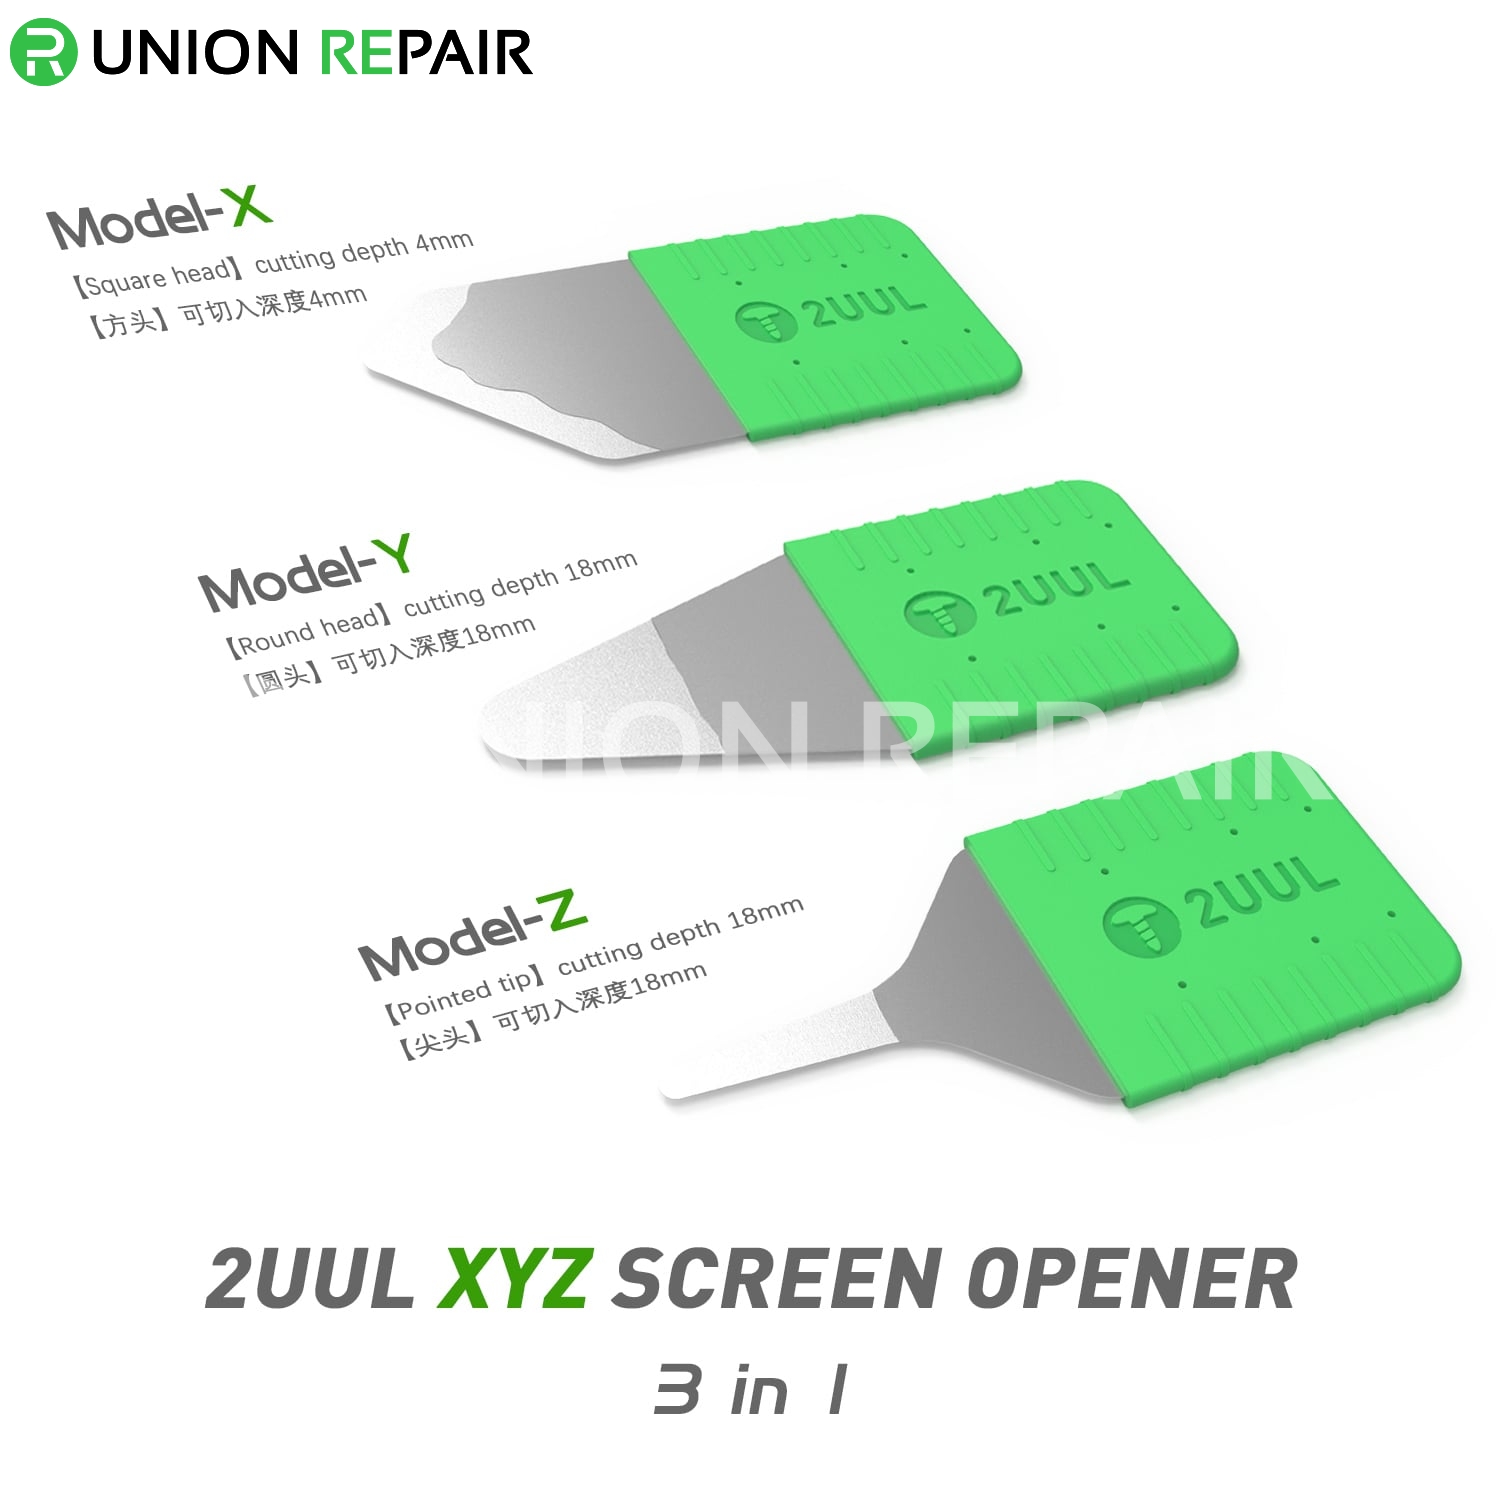 2UUL XYZ 3in1 Screen Opener